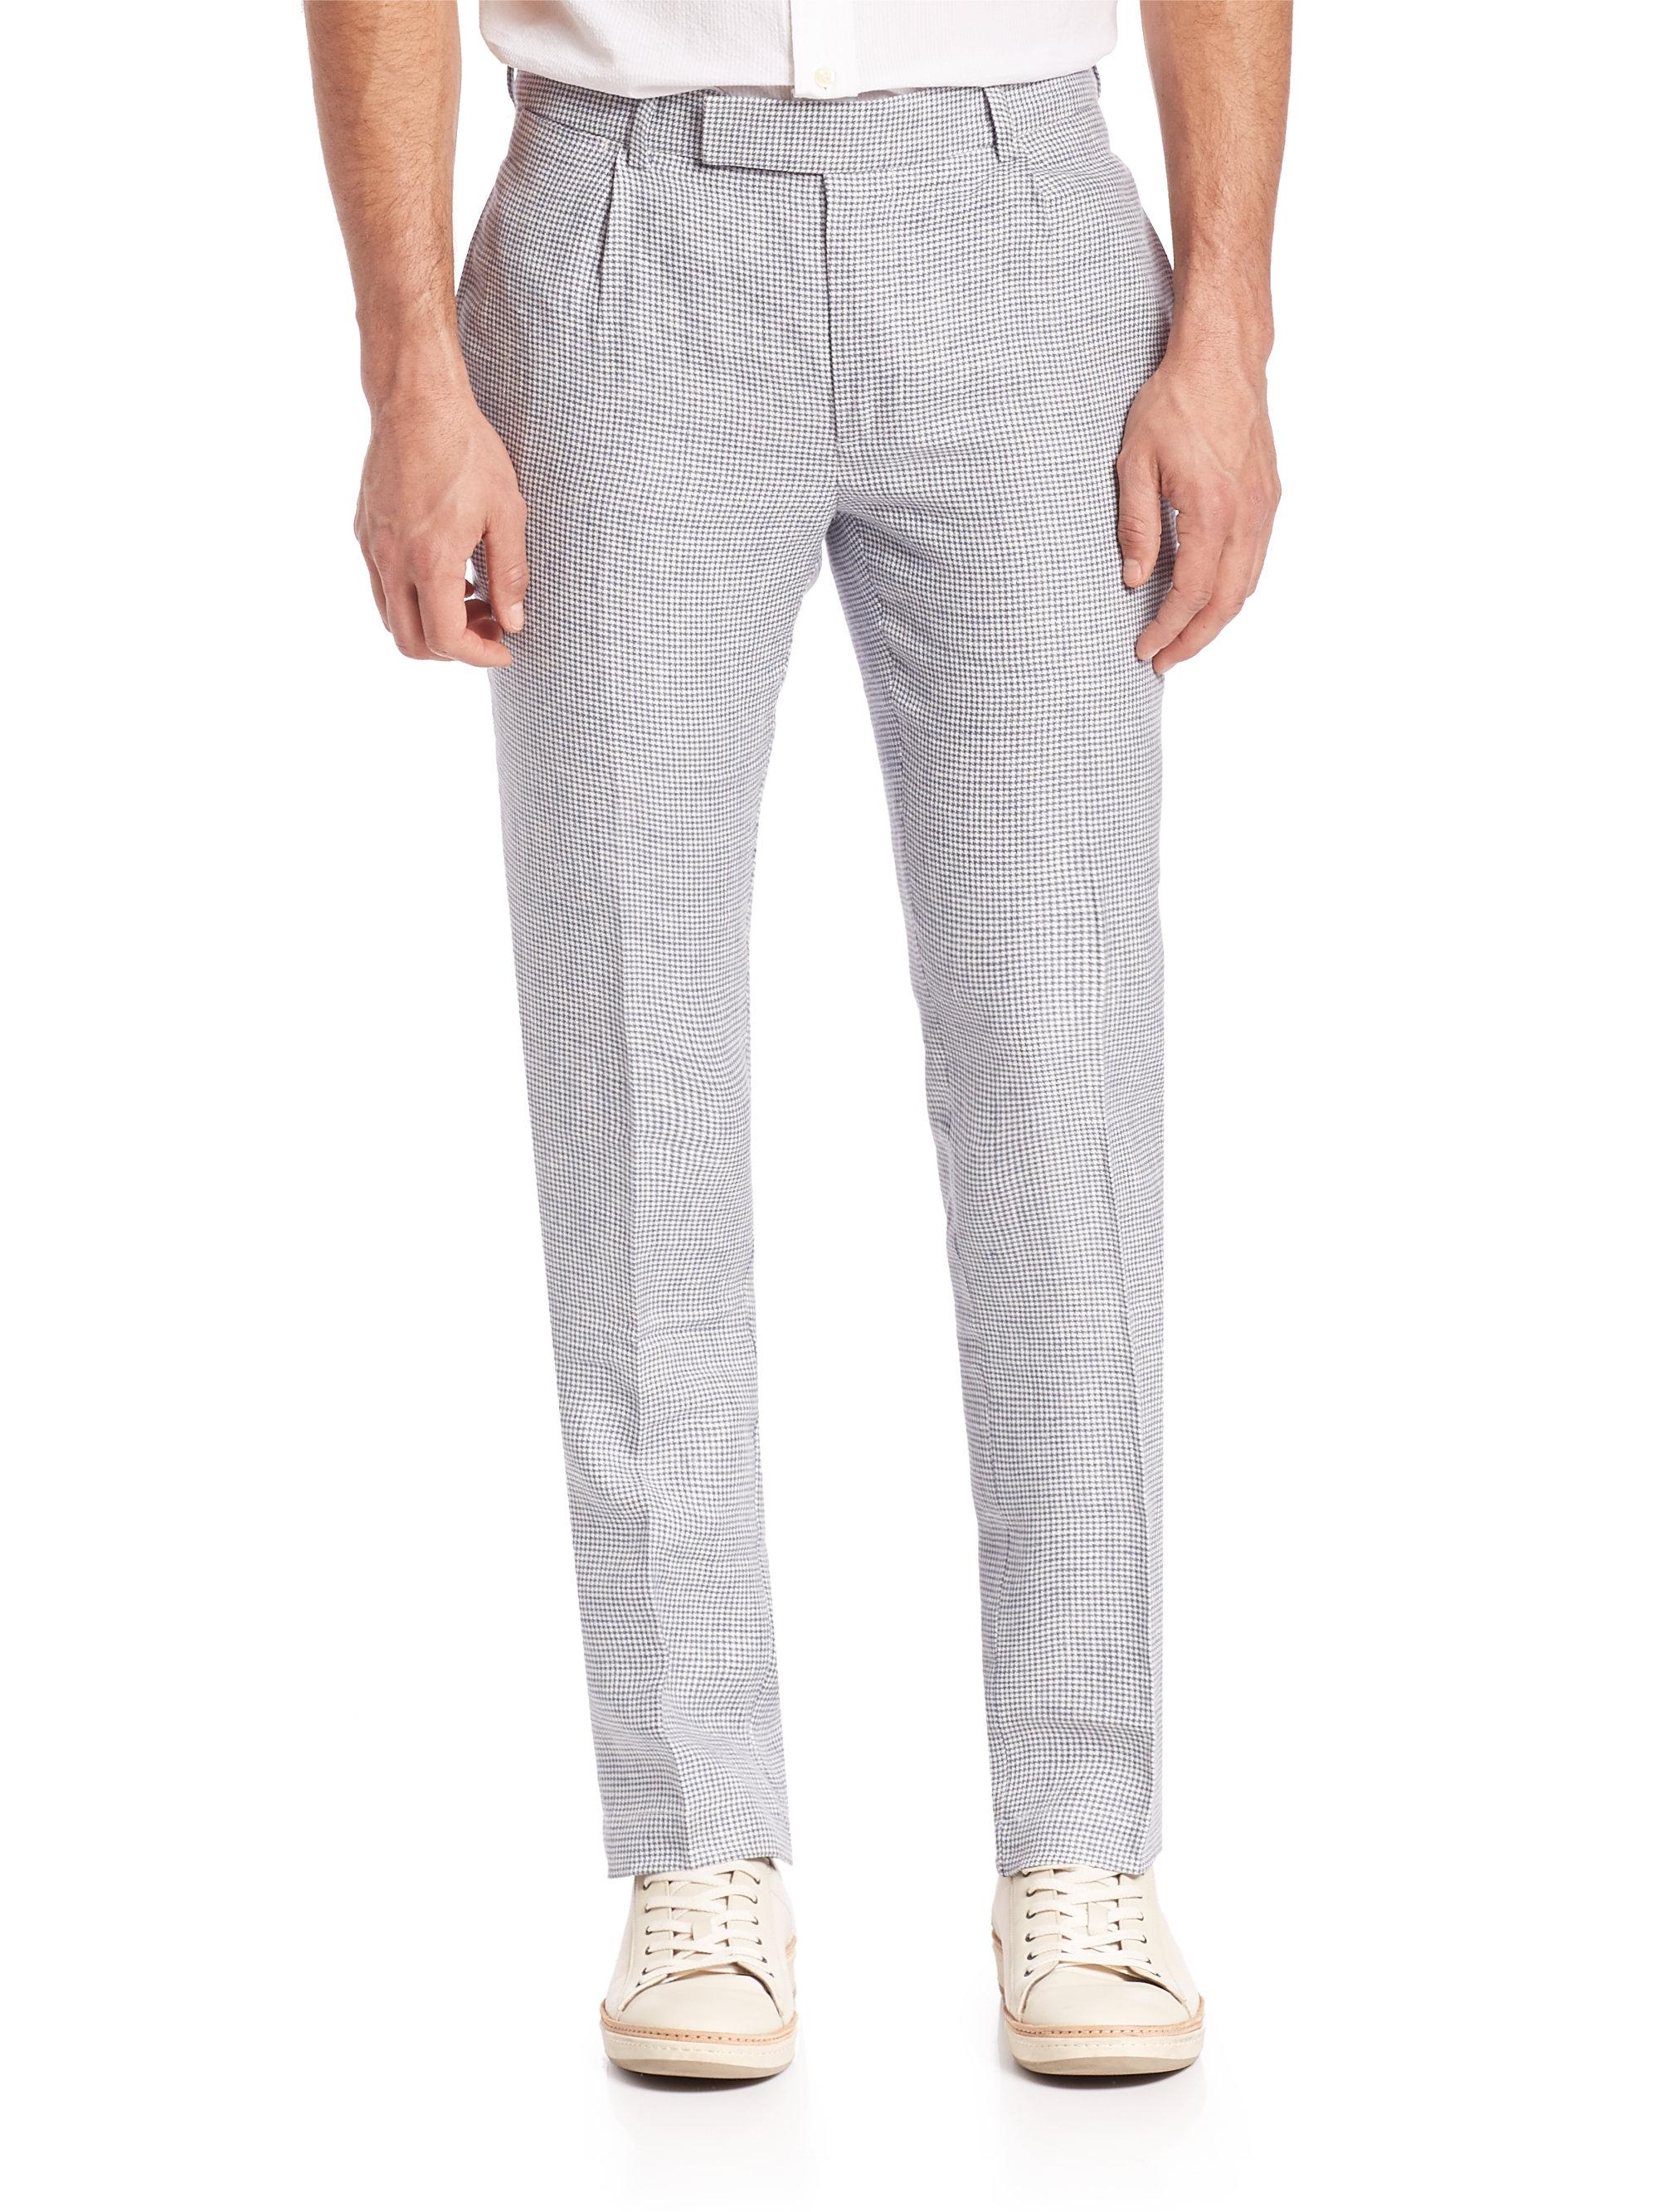 Lyst - Polo Ralph Lauren Slim-fit Linen Pants in Gray for Men